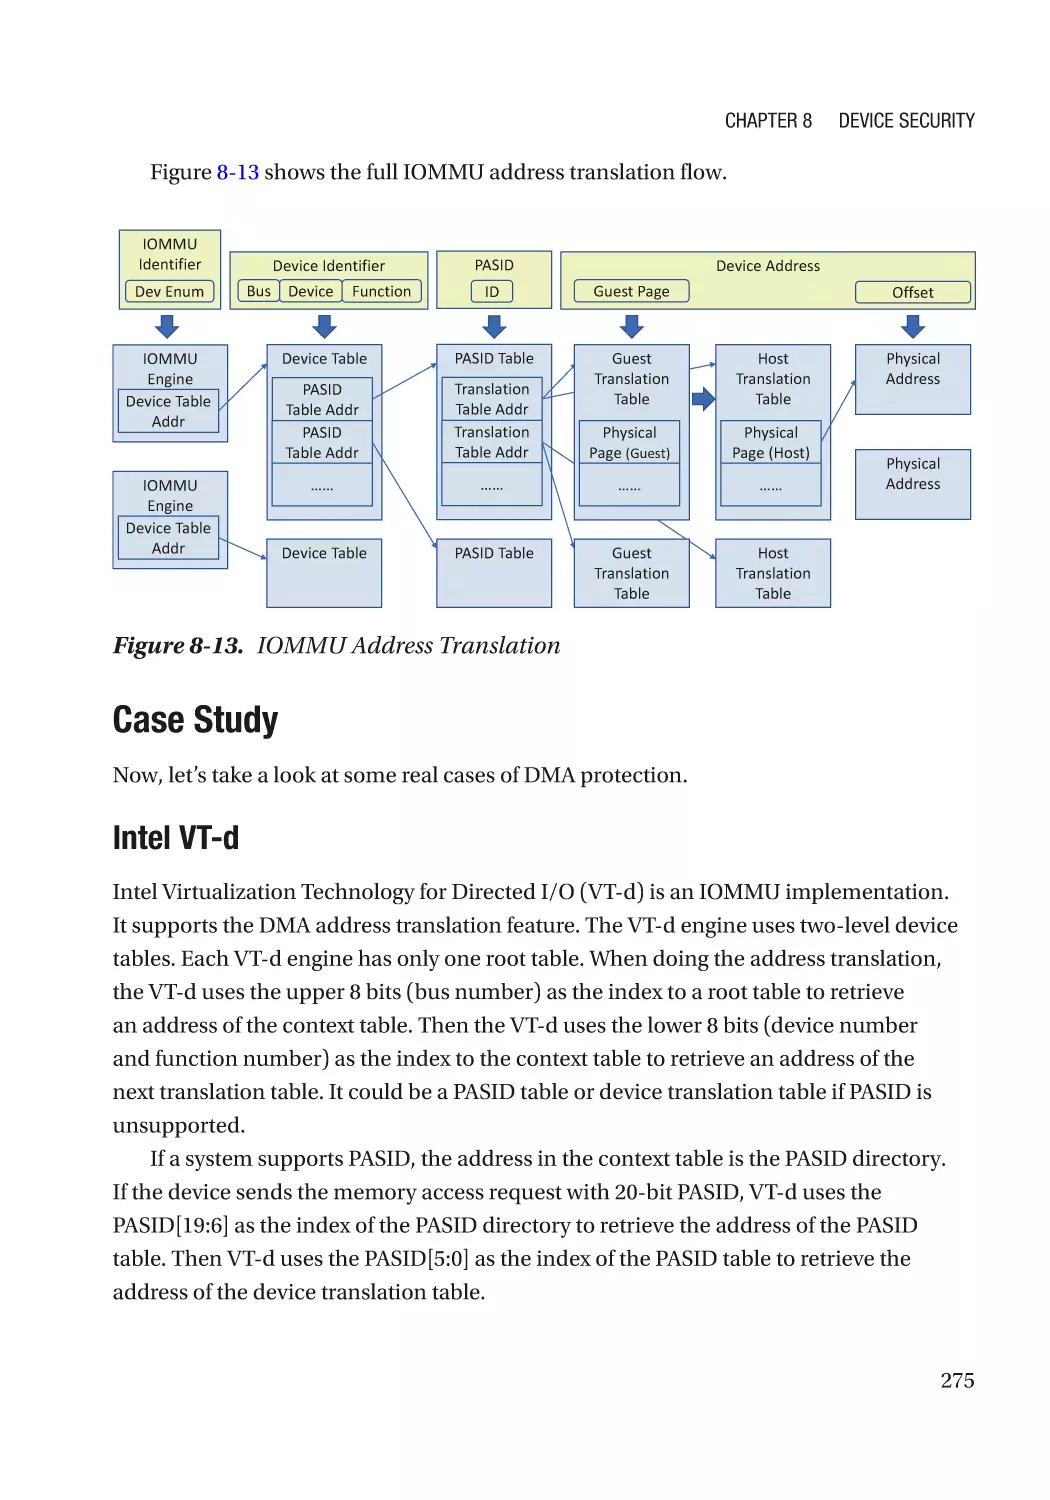 Case Study
Intel VT-d